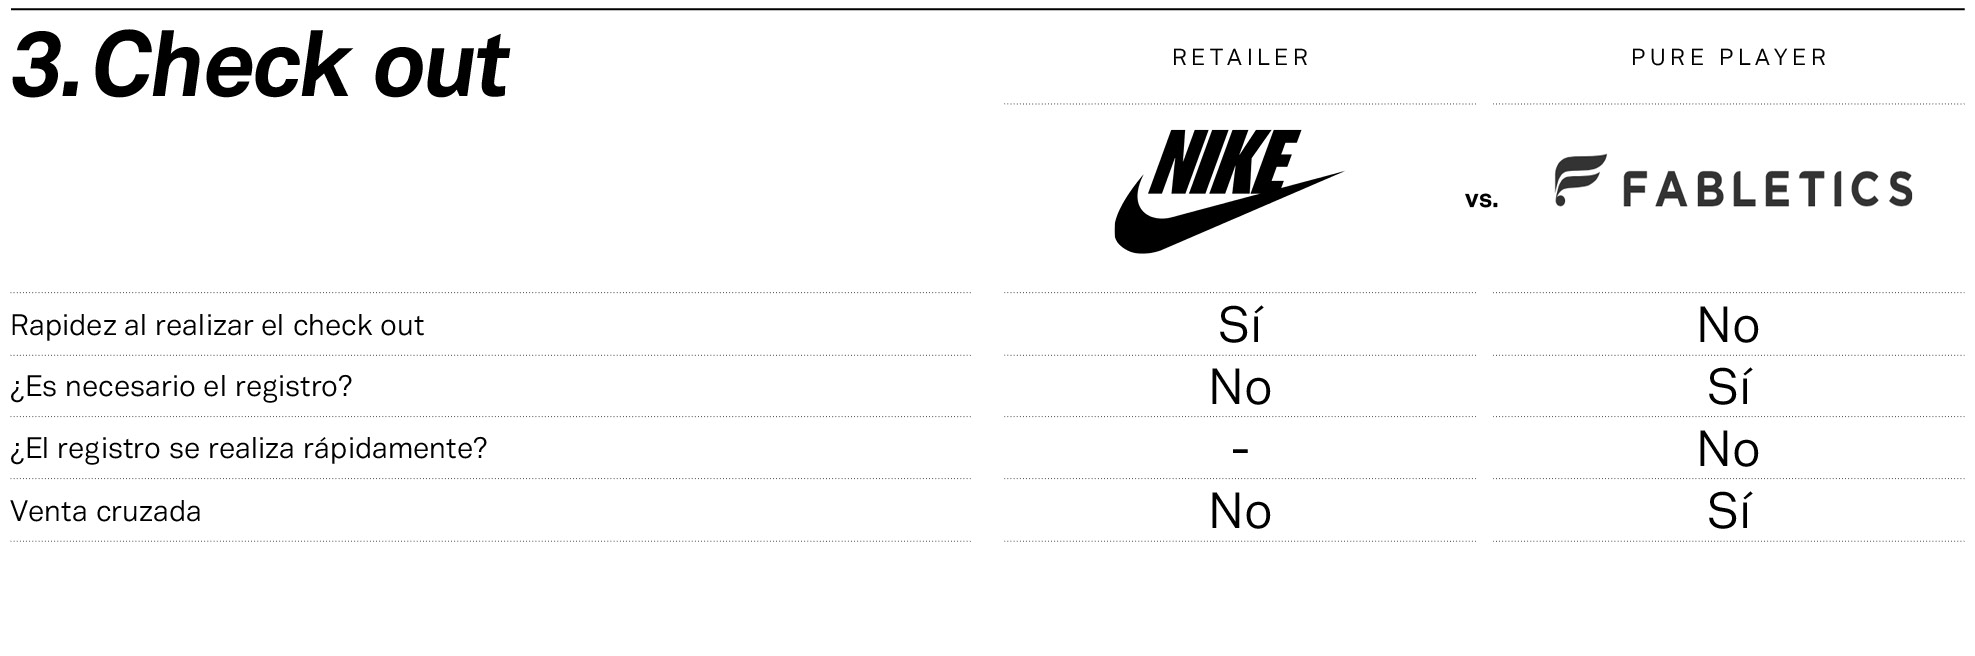 Nike y Fabletics, frente a frente en el check out